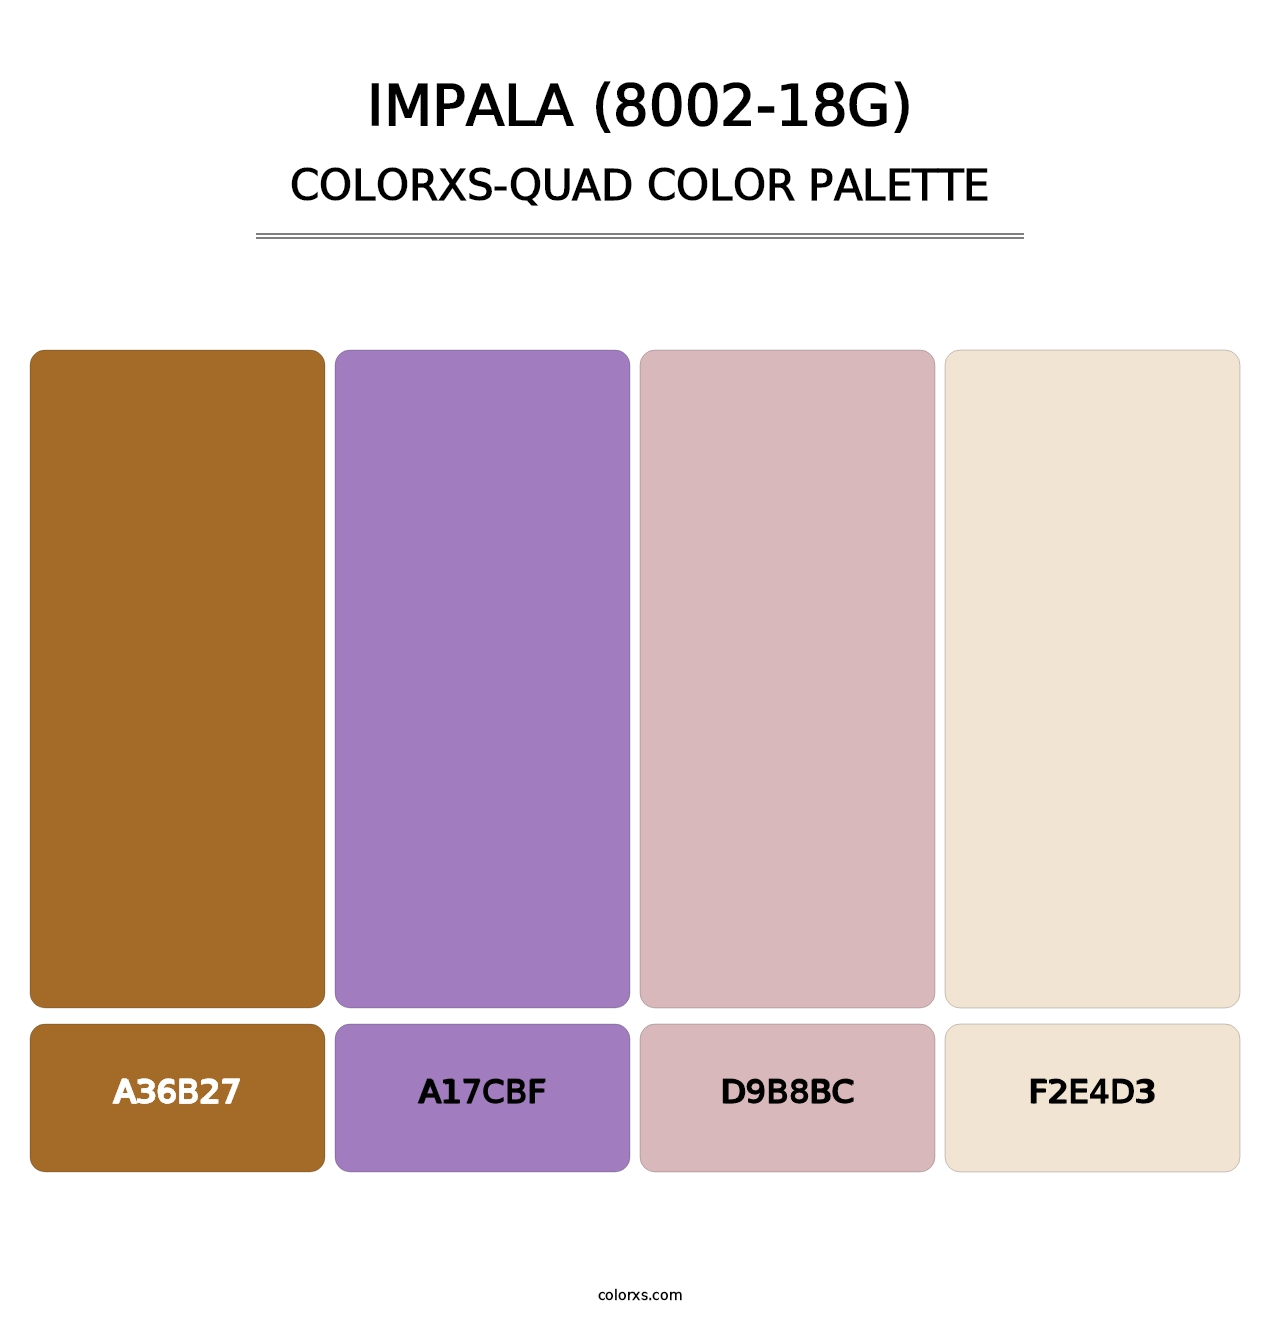 Impala (8002-18G) - Colorxs Quad Palette